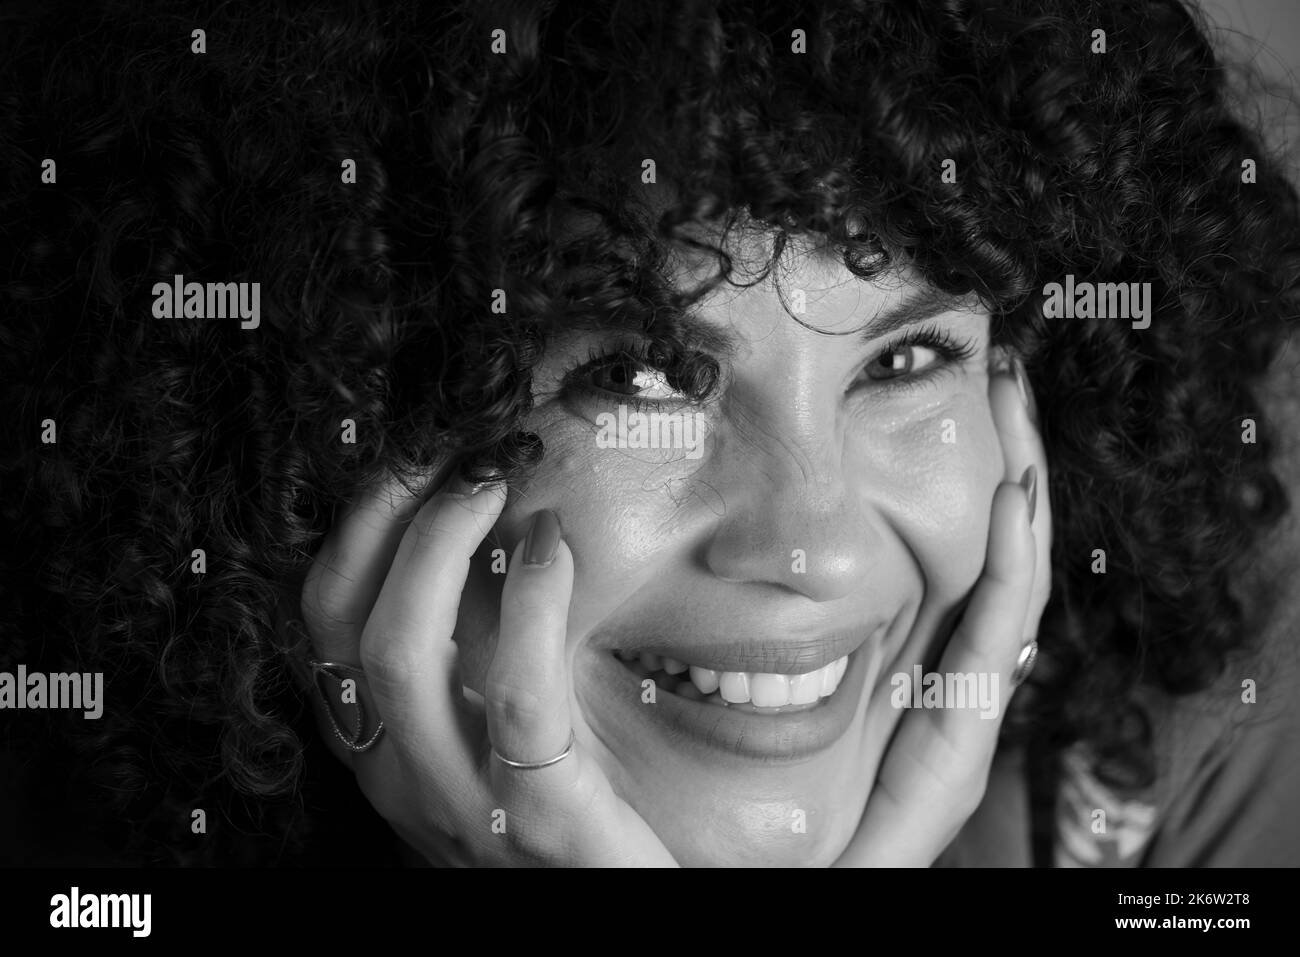 Ritratto in bianco e nero di una donna con capelli ricci. Bello e sorridente su sfondo chiaro. Donna matura. Concetto di autostima. Foto Stock